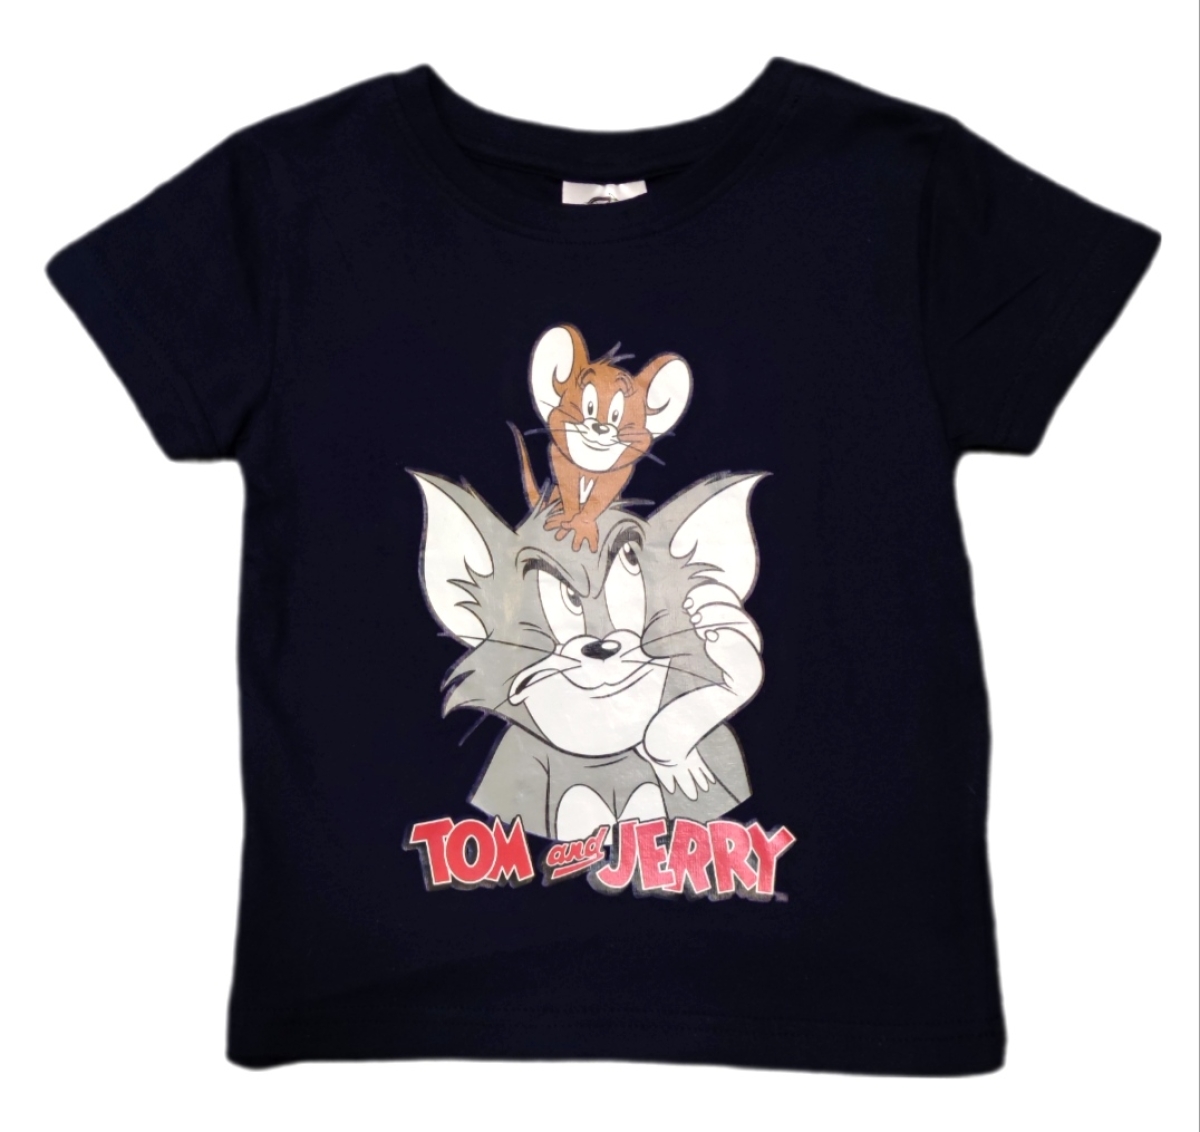 Schickes Jungen Shirt mit Tom und Jerry, der Katze und der Maus aus dem gleichnamigen Zeichtrickfilm